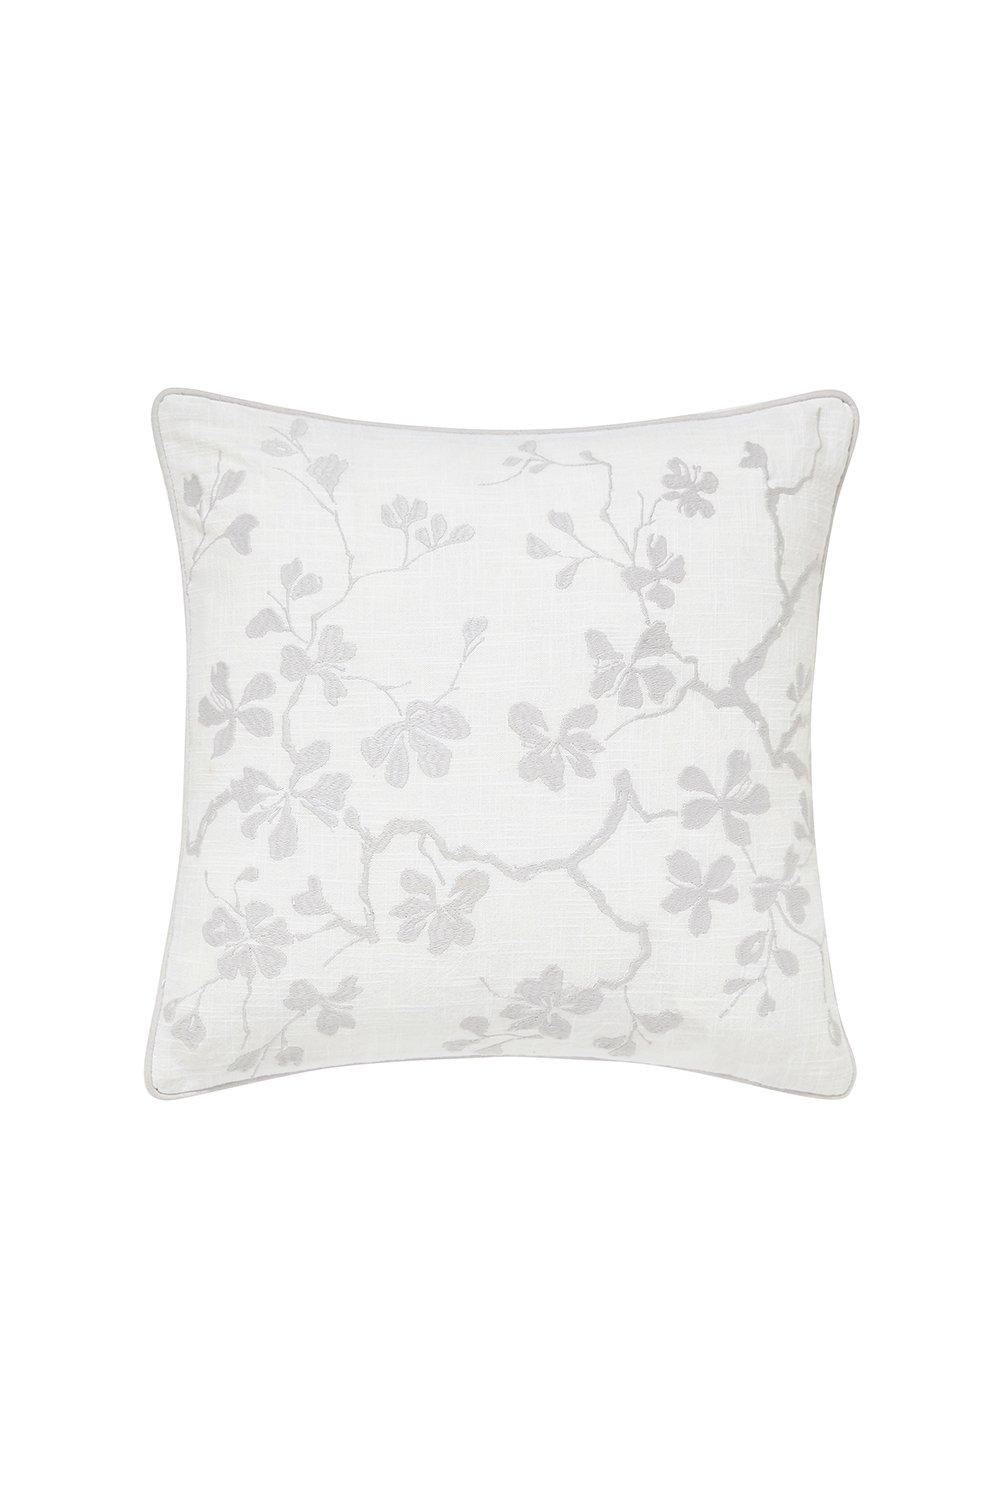 'Athena' Cotton Cushion